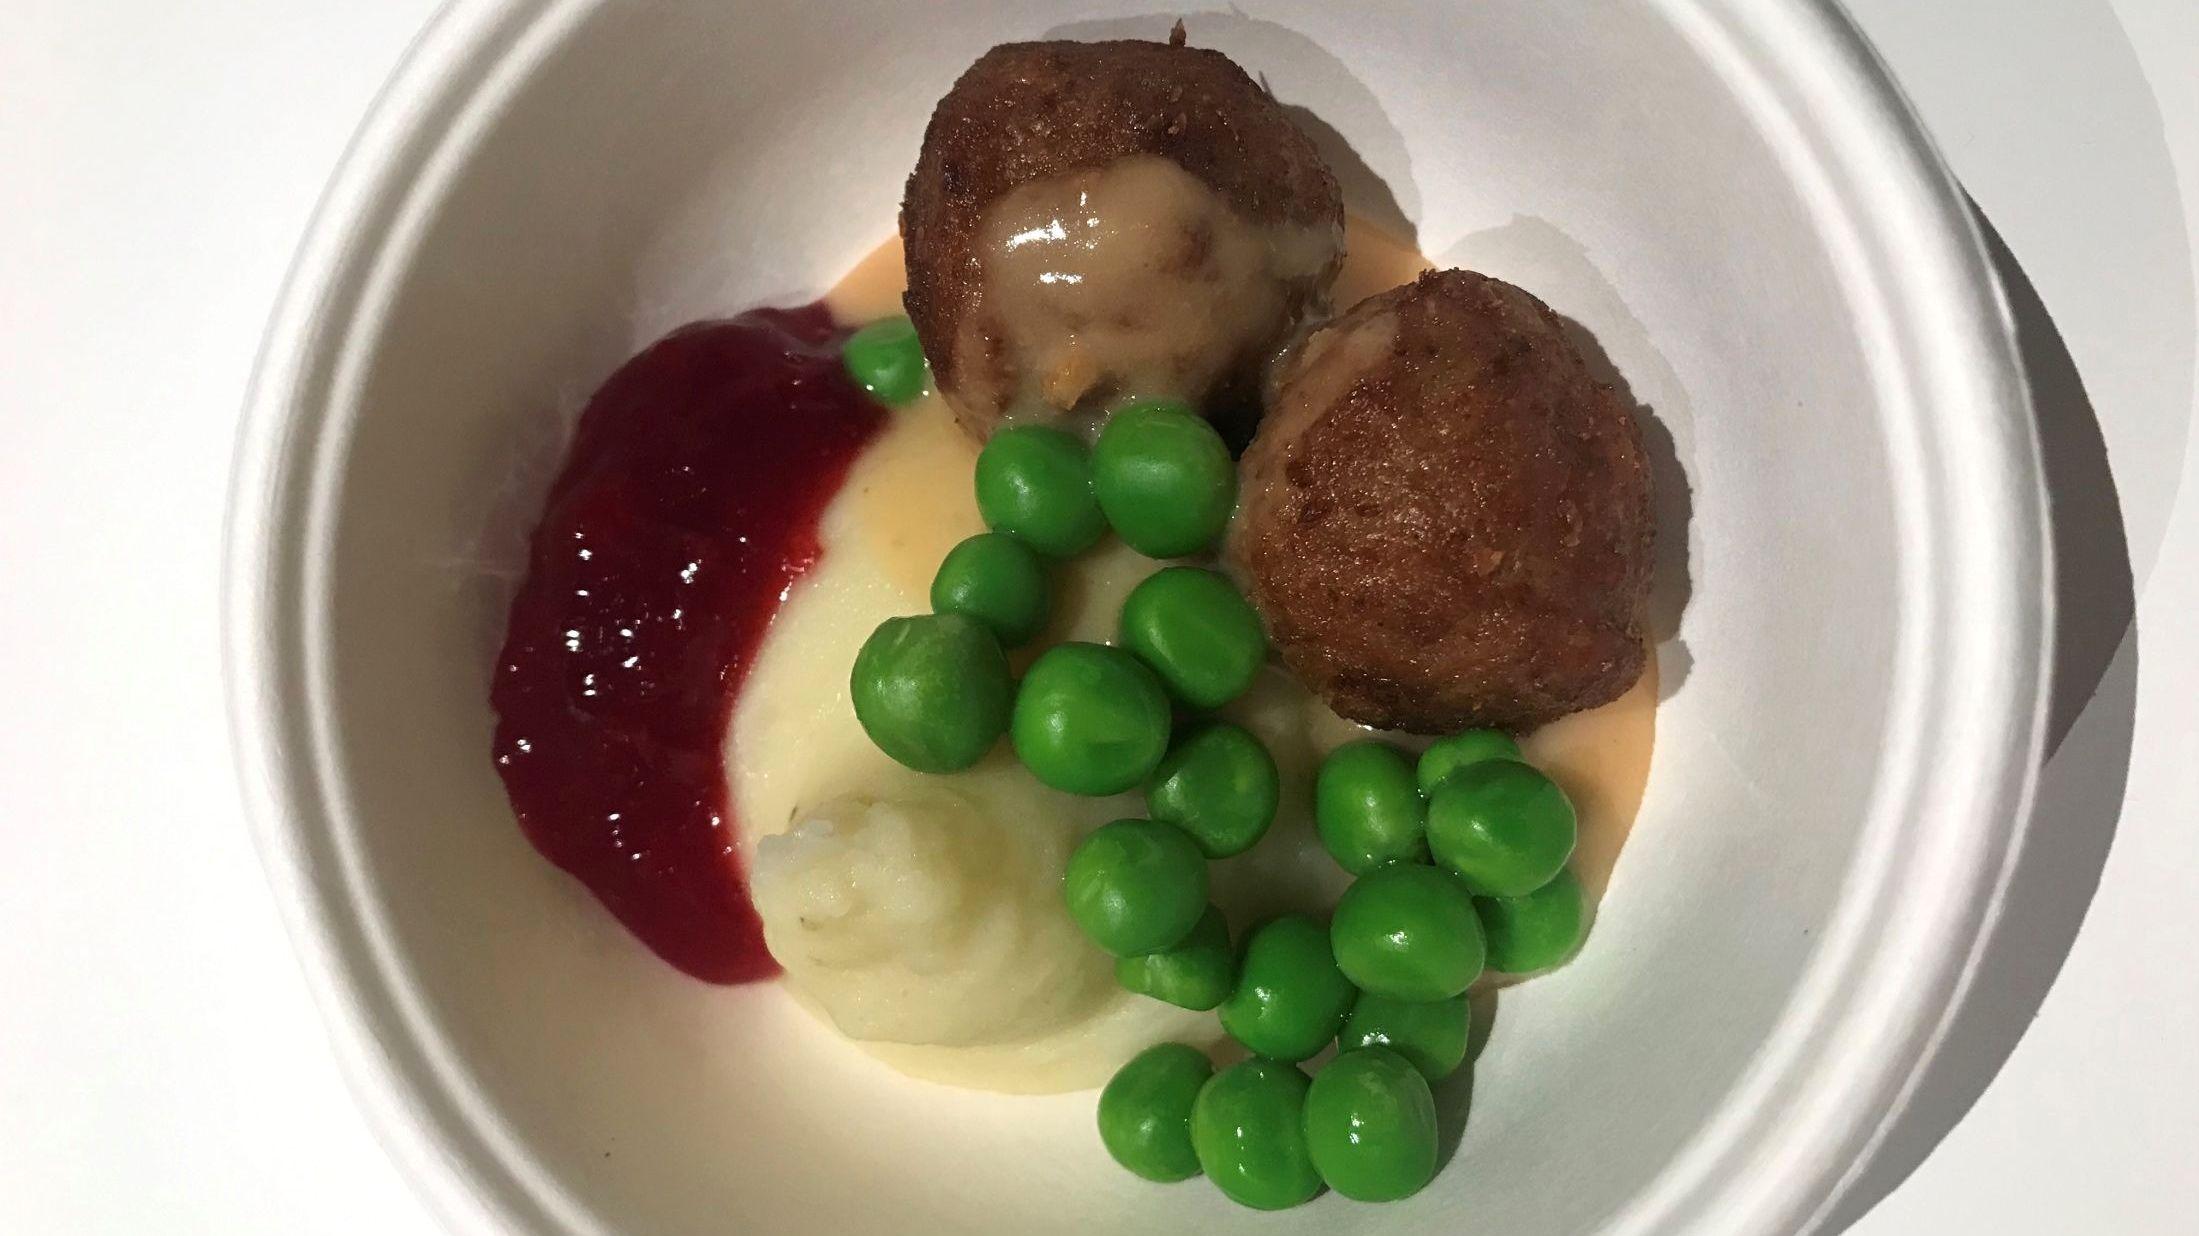 LIGNER PÅ KJØTT: Prototypen av IKEAs planlagte «eatballs» ble servert med potetmos og erter da den ble testet av de ansatte. Foto: IKEA